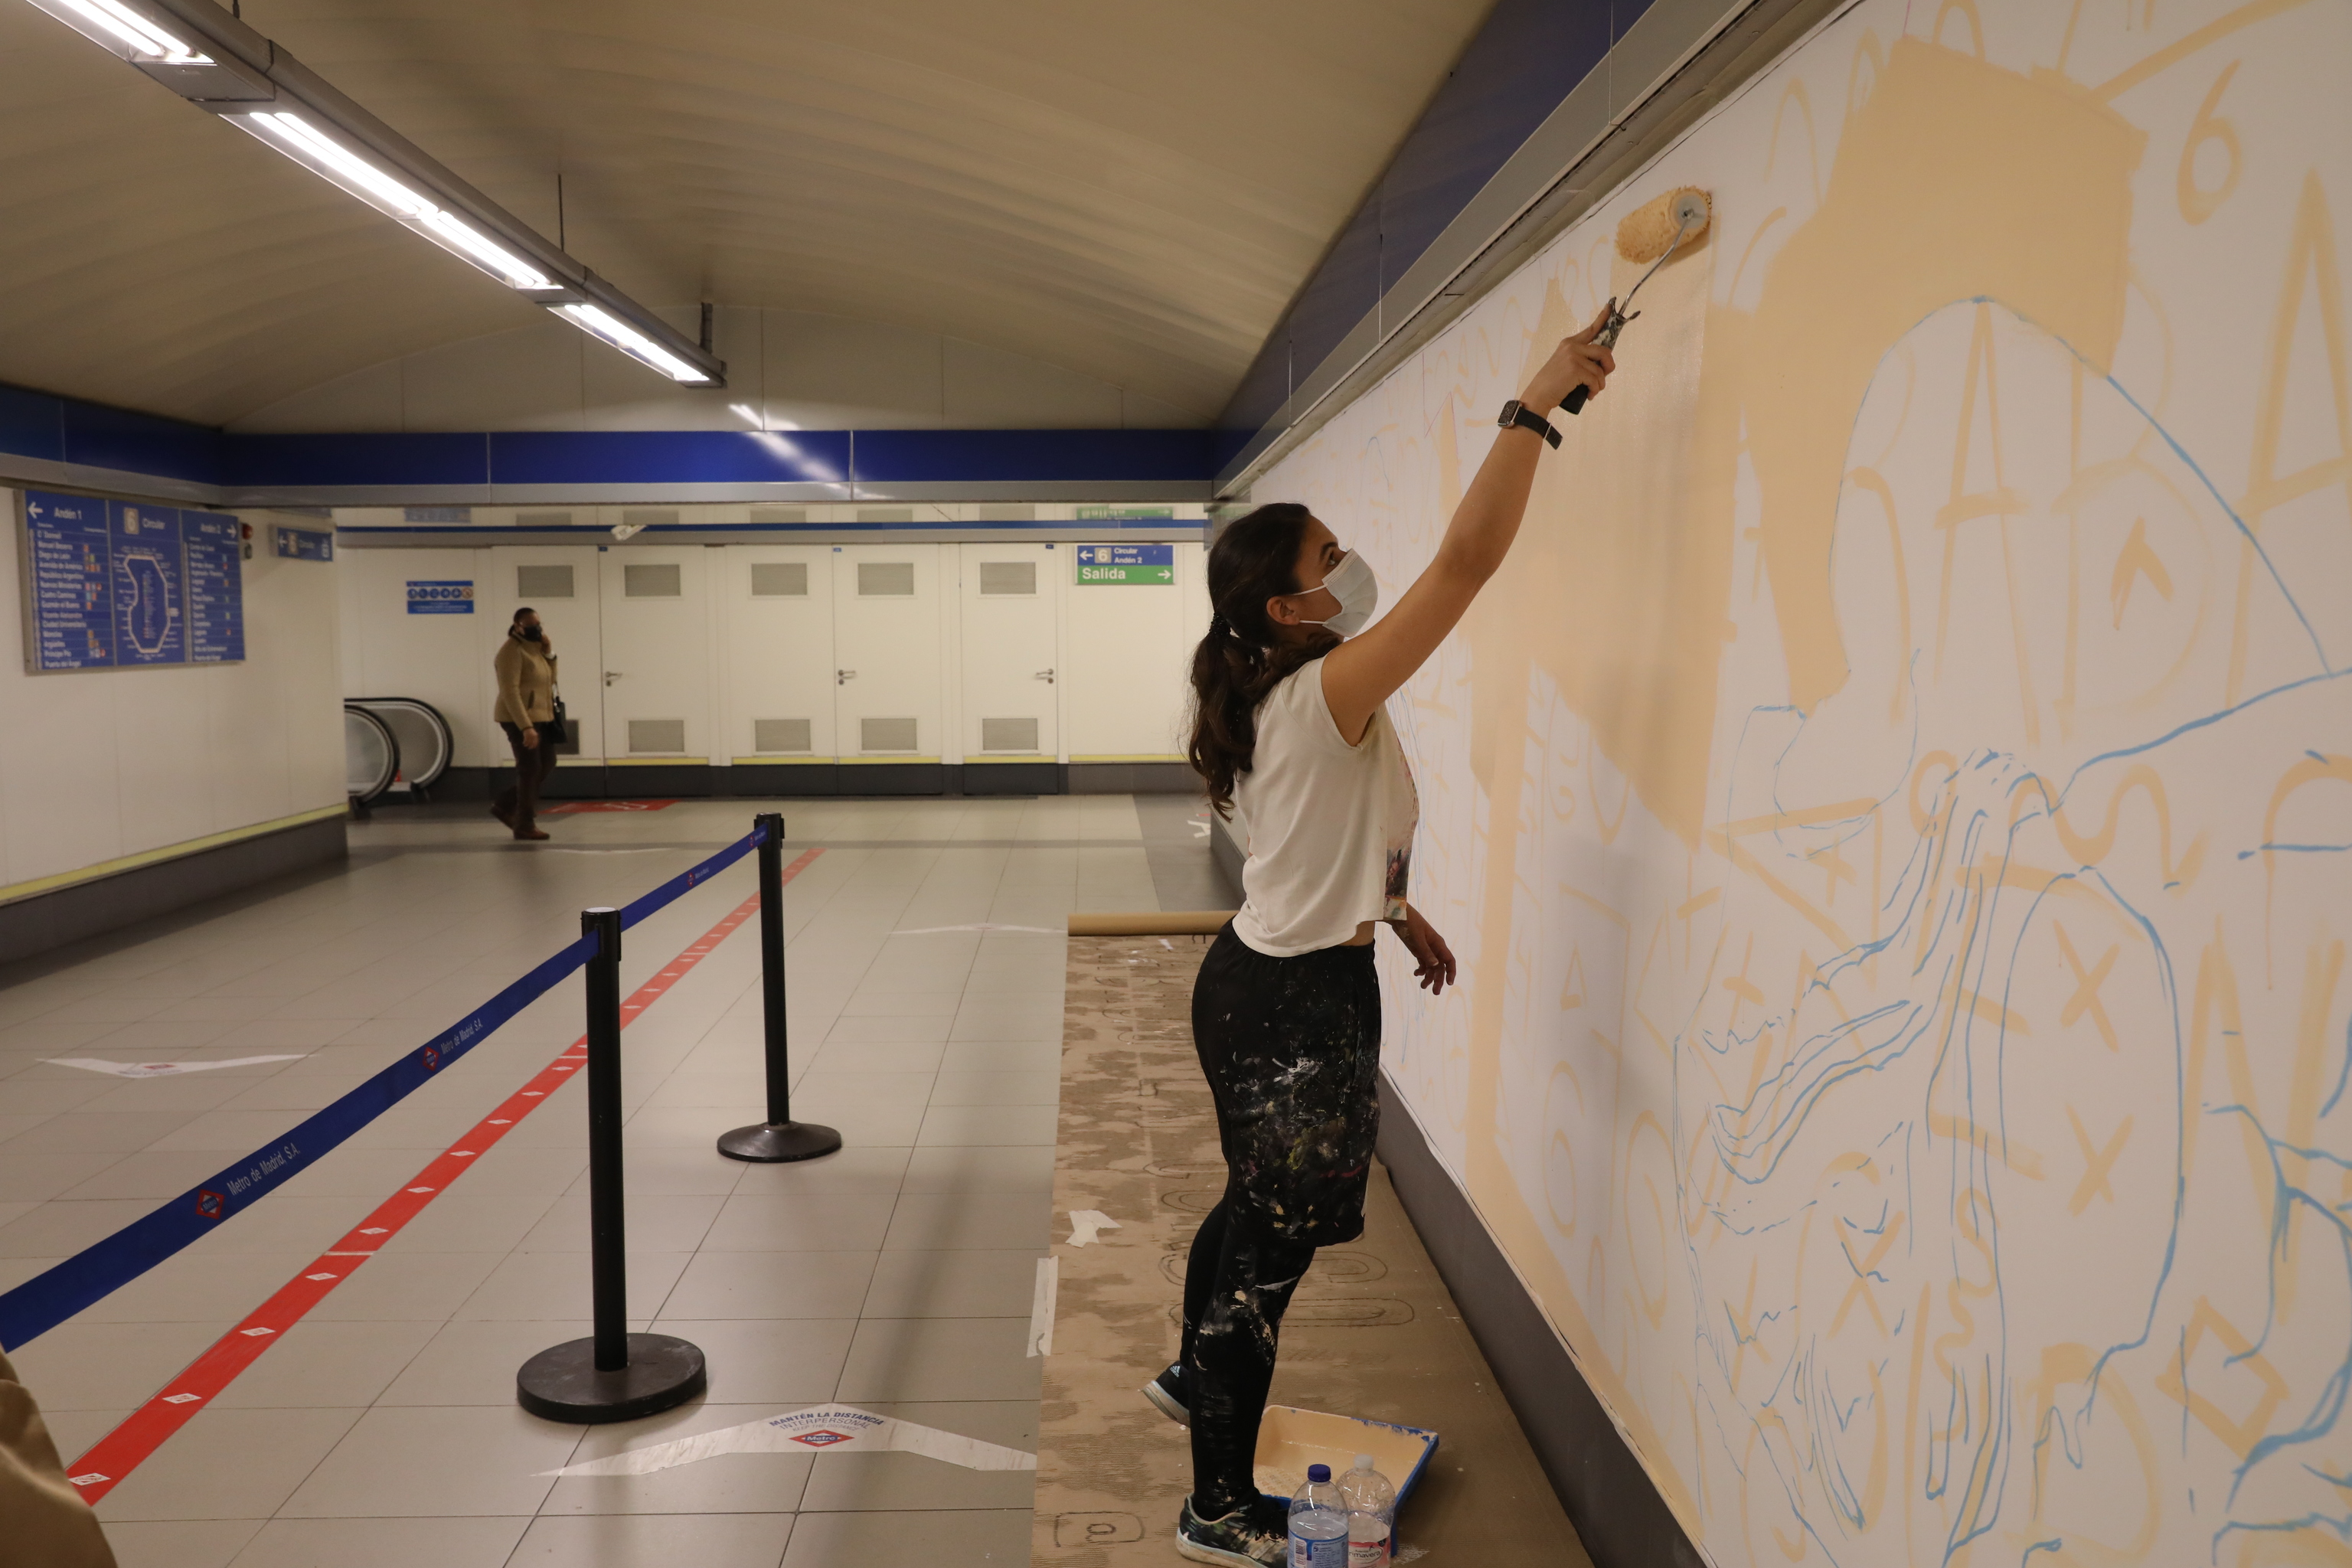 Mafalda M. Gonalves, ayer, pintando su mural en el Metro de Madrid.